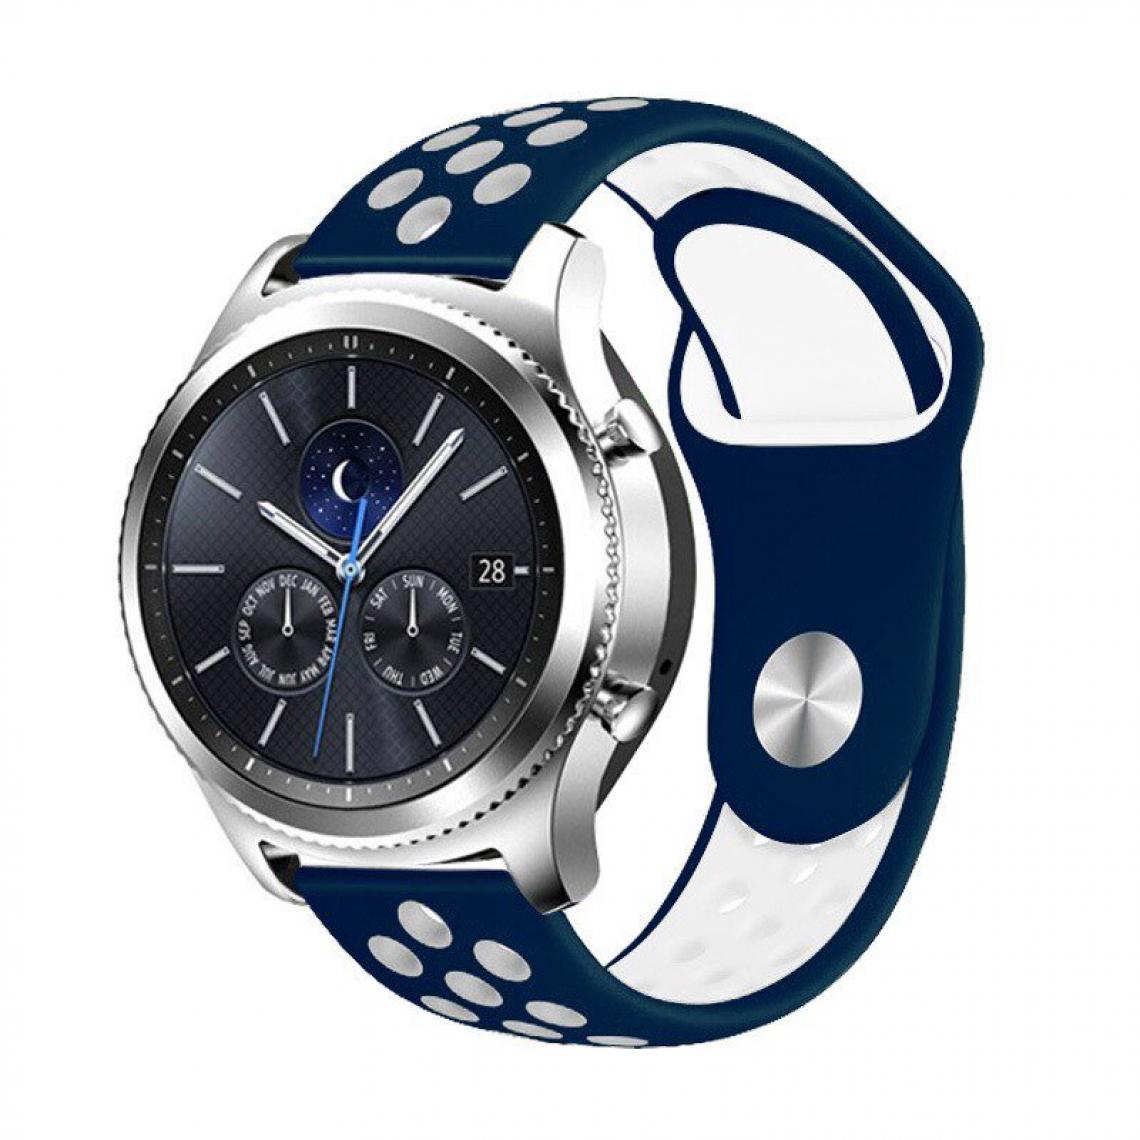 Phonecare - Bracelet SportyStyle pour Huawei GT Classic - Bleu foncé / Blanc - Autres accessoires smartphone